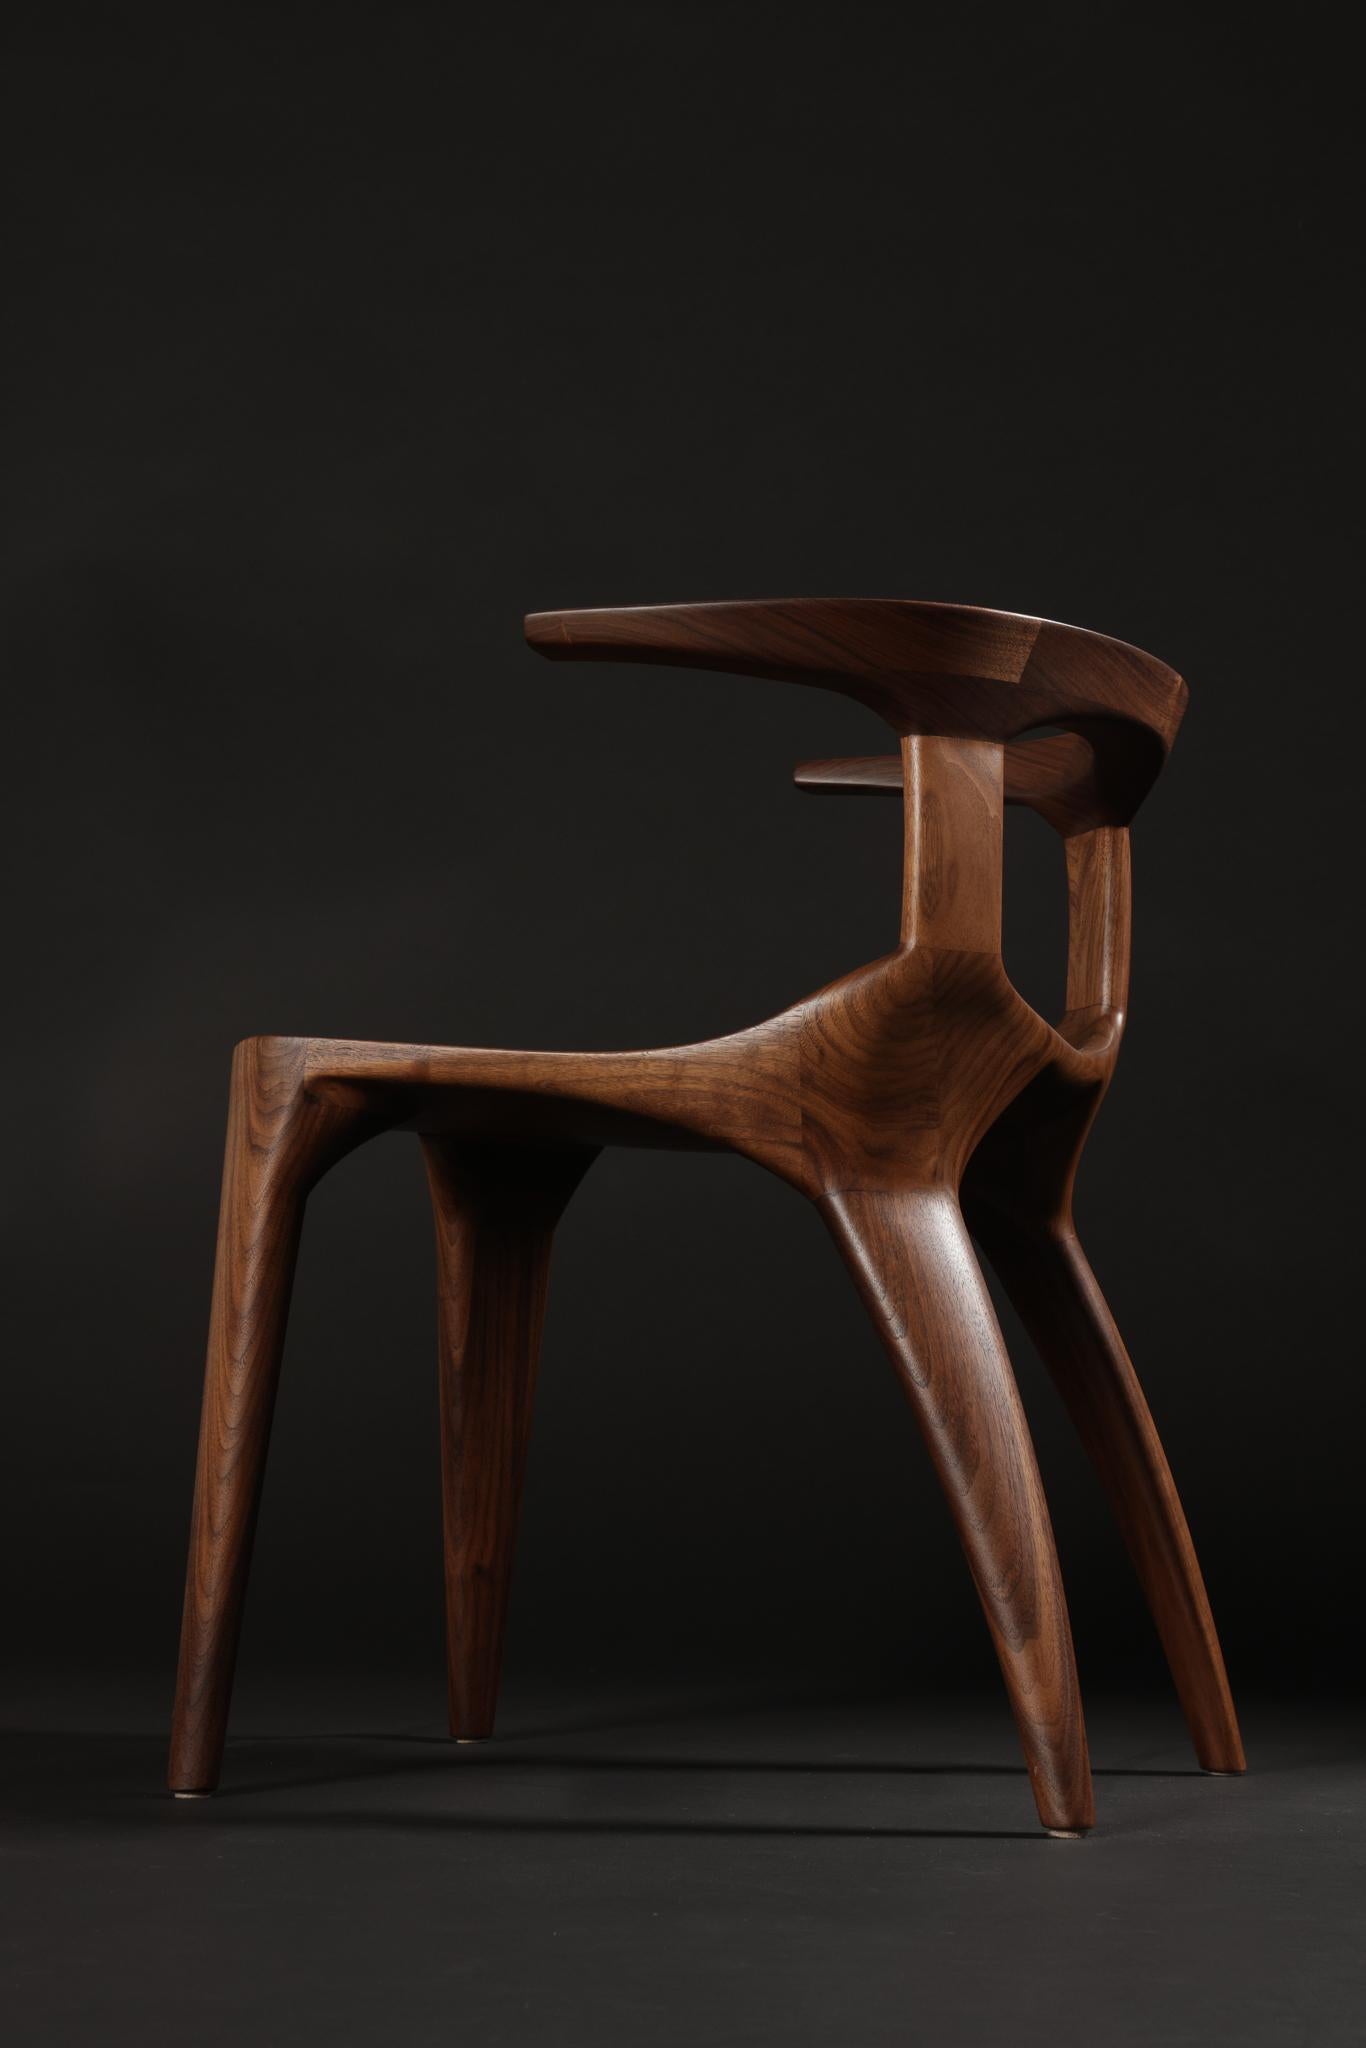 Komplexe, aber funktionelle Tischlerarbeiten machen dieses Möbelstück zu einer zeitlosen Ergänzung für jede Inneneinrichtung.  Einzeln oder als Set, ein moderner Klassiker.  

Ein Stuhl aus amerikanischem Schwarznussbaum wie abgebildet auf Lager,